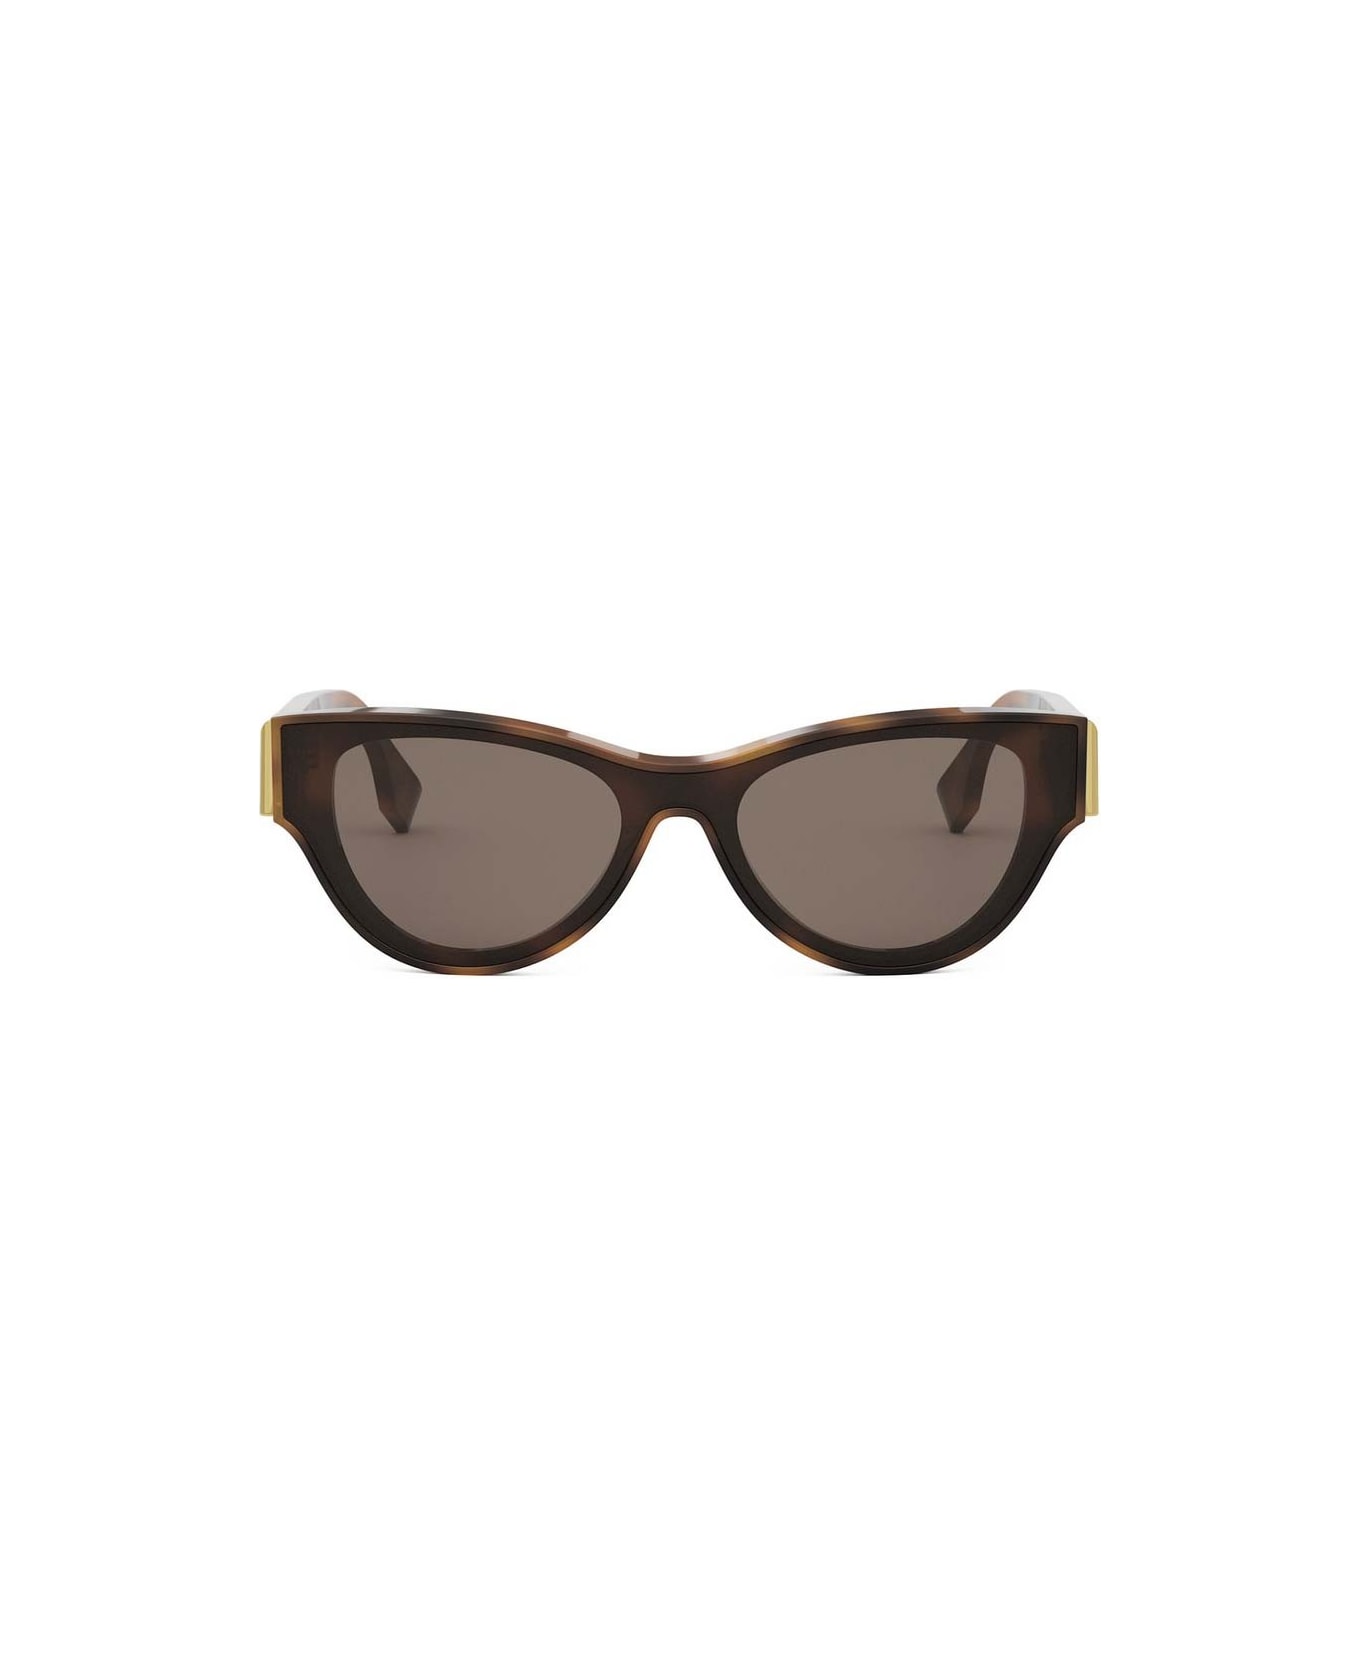 Fendi Eyewear Sunglasses - Havana/Marrone サングラス